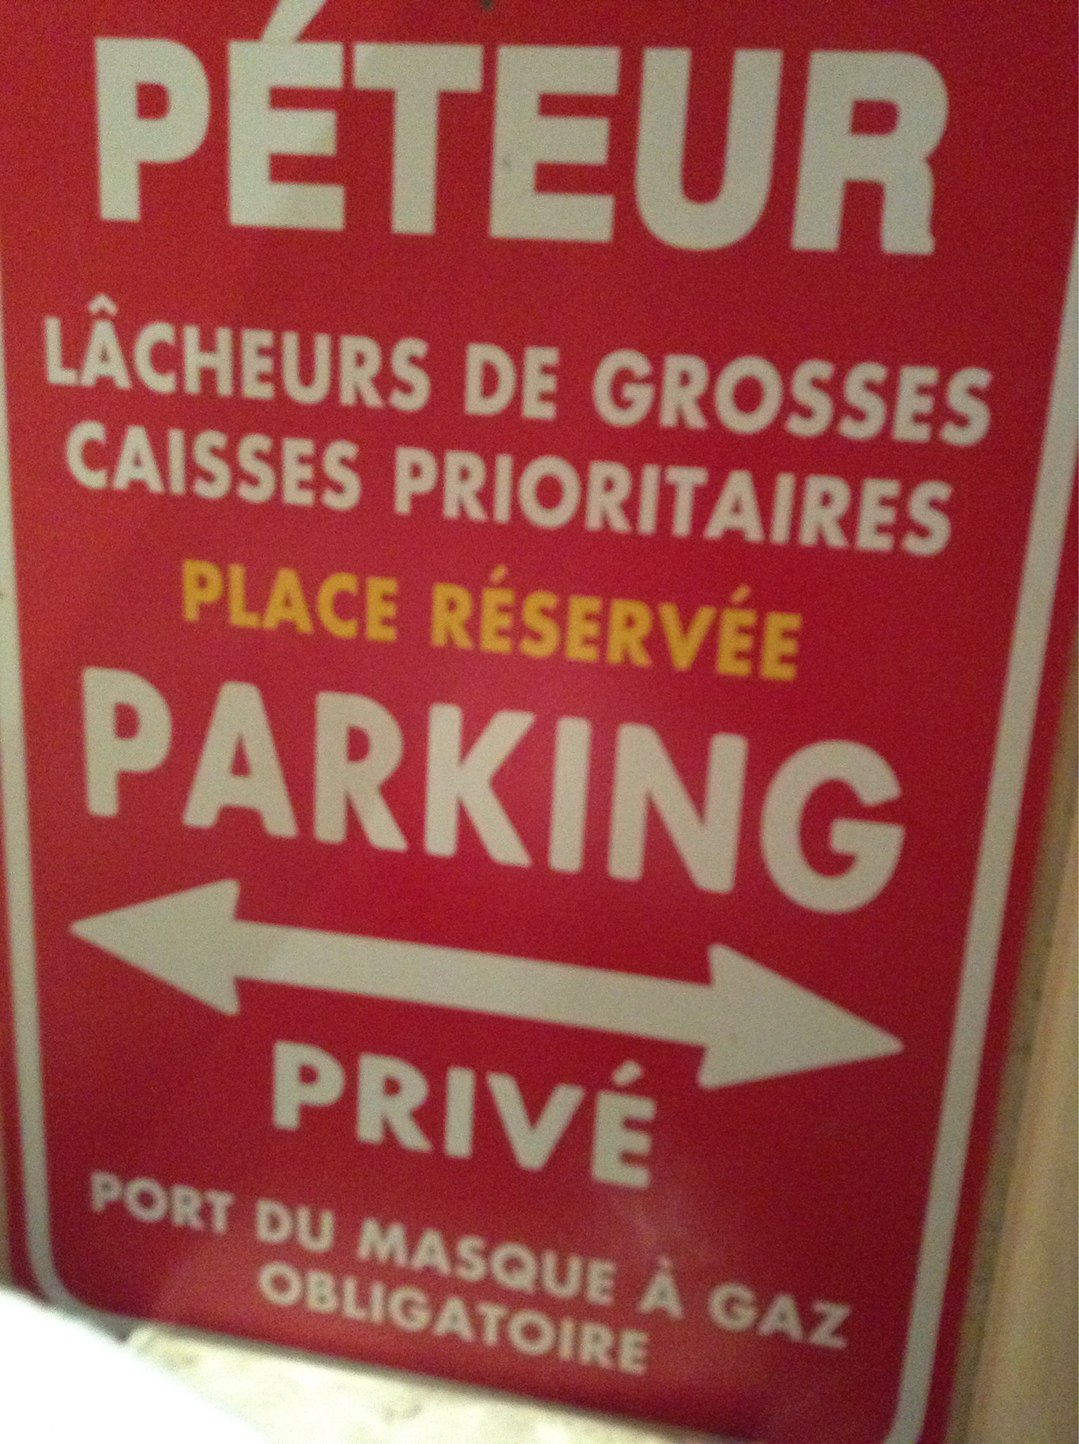 parking privée pour grosses caisses - meme